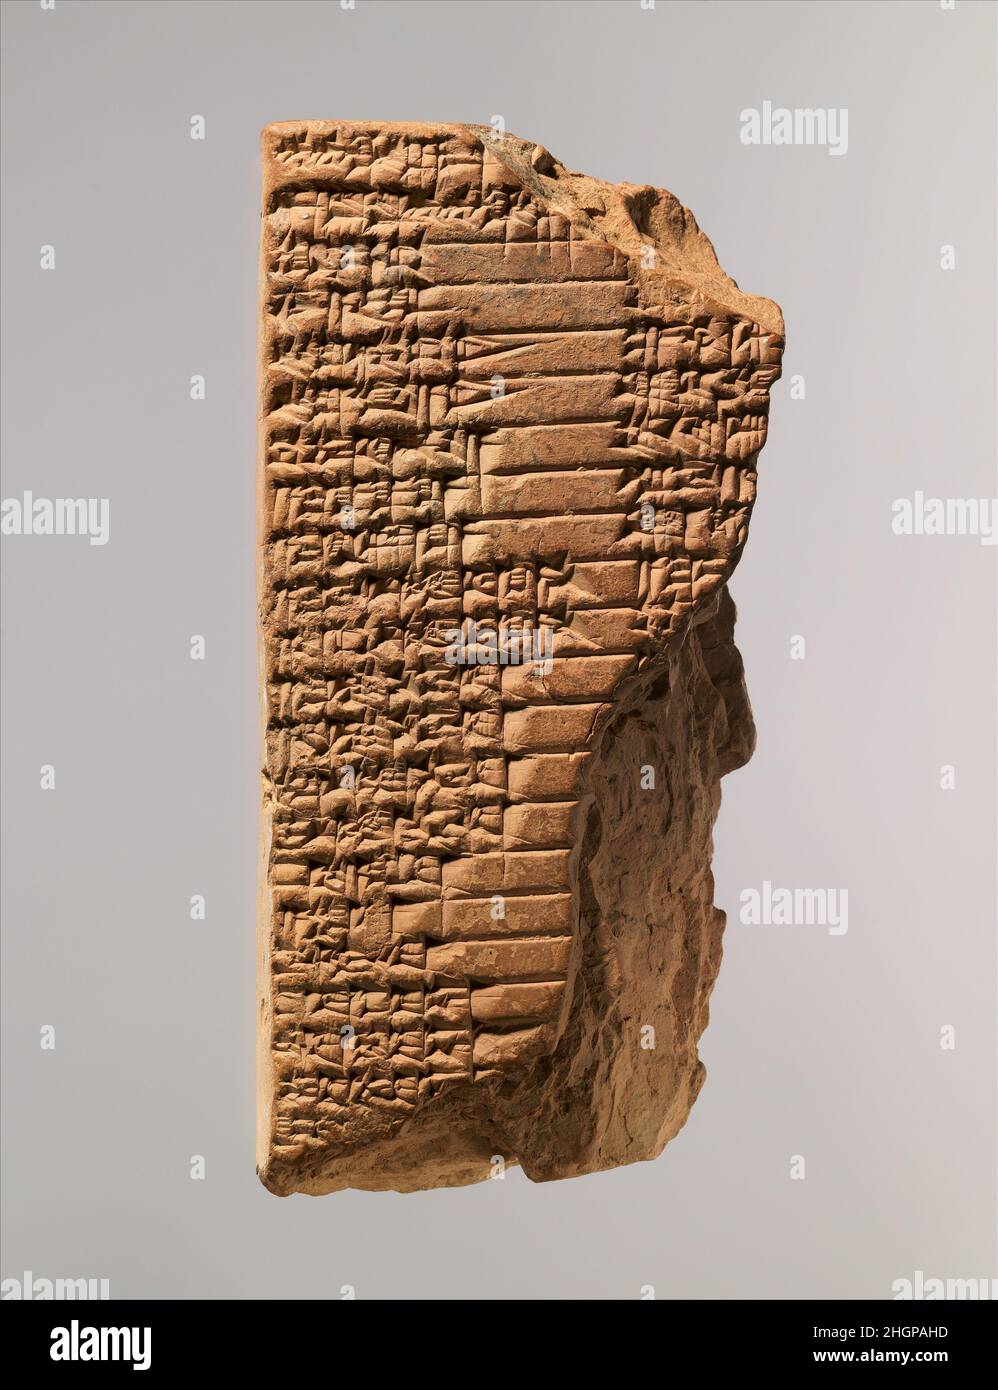 Keilschrift: Alter babylonischer Balag an die Muttergöttin Aruru ca. 19th.–16th. Jahrhundert v. Chr. babylonische liturgische Kompositionen wurden in Mesopotamien verwendet, um die Götter zu beschwichtigen. Gesungen oder rezitiert von Klagepriestern in Ritualen, wurden sie oft im emesalen Dialekt der sumerischen Sprache komponiert. Als wir diese Texte schriftlich kennen, wurde die sumerische Sprache nicht mehr gesprochen. Zweifellos haben die ungewöhnlichen Worte und Klänge der Emesal-Liturgie die Wirksamkeit und Attraktivität dieser Aufführungen noch zusätzlich erweitert.dieser Text ist höchstwahrscheinlich eine Balag-Komposition. Das Wort Balag – bezieht sich auf ein Musikinstrument uns Stockfoto